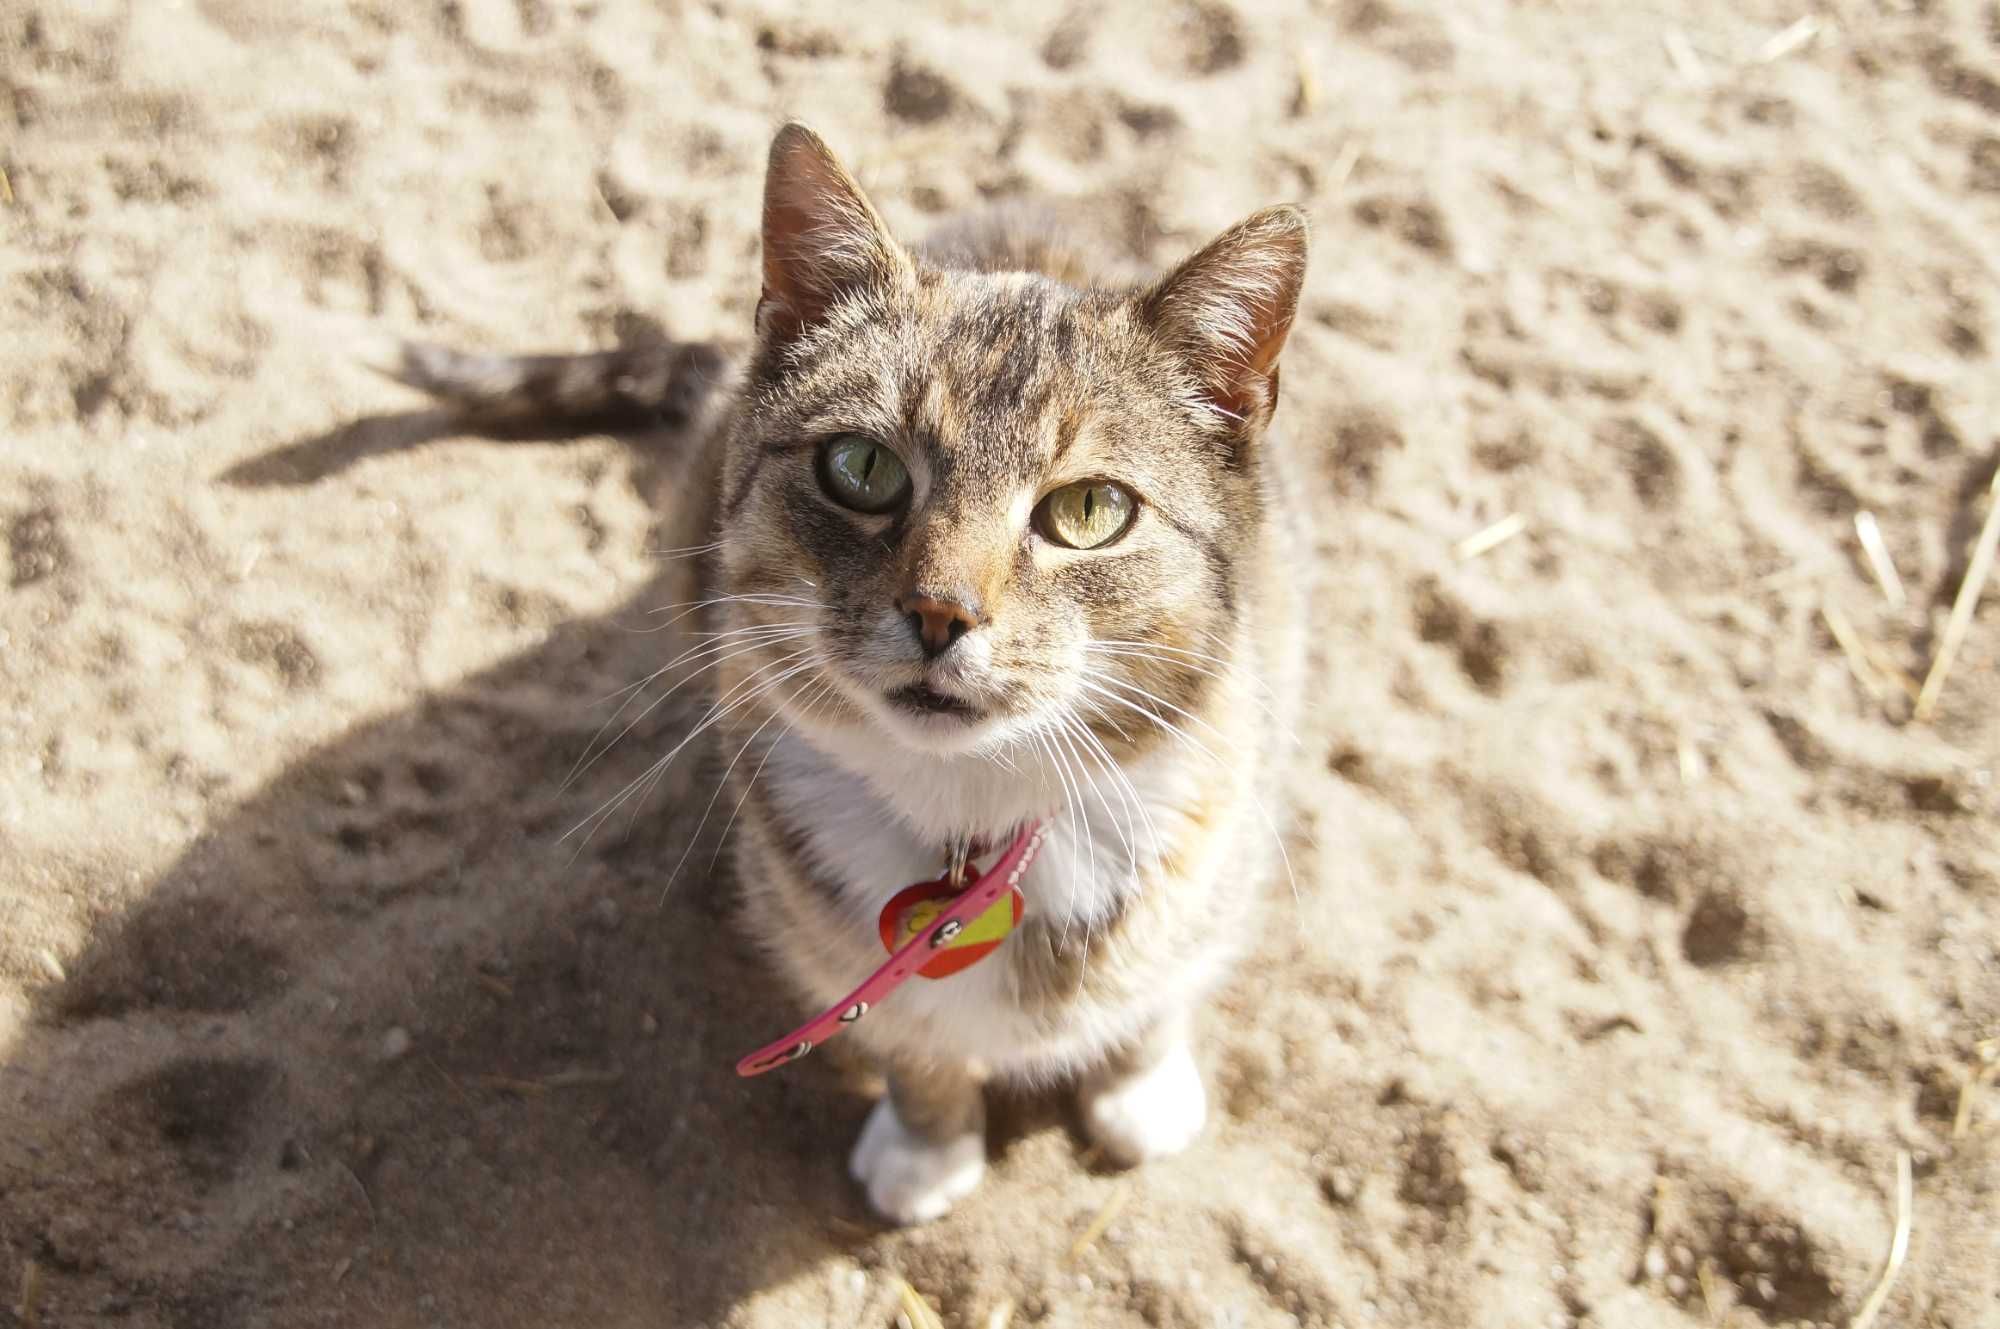 Ciri, śliczna szaro-ruda koteczka do adopcji